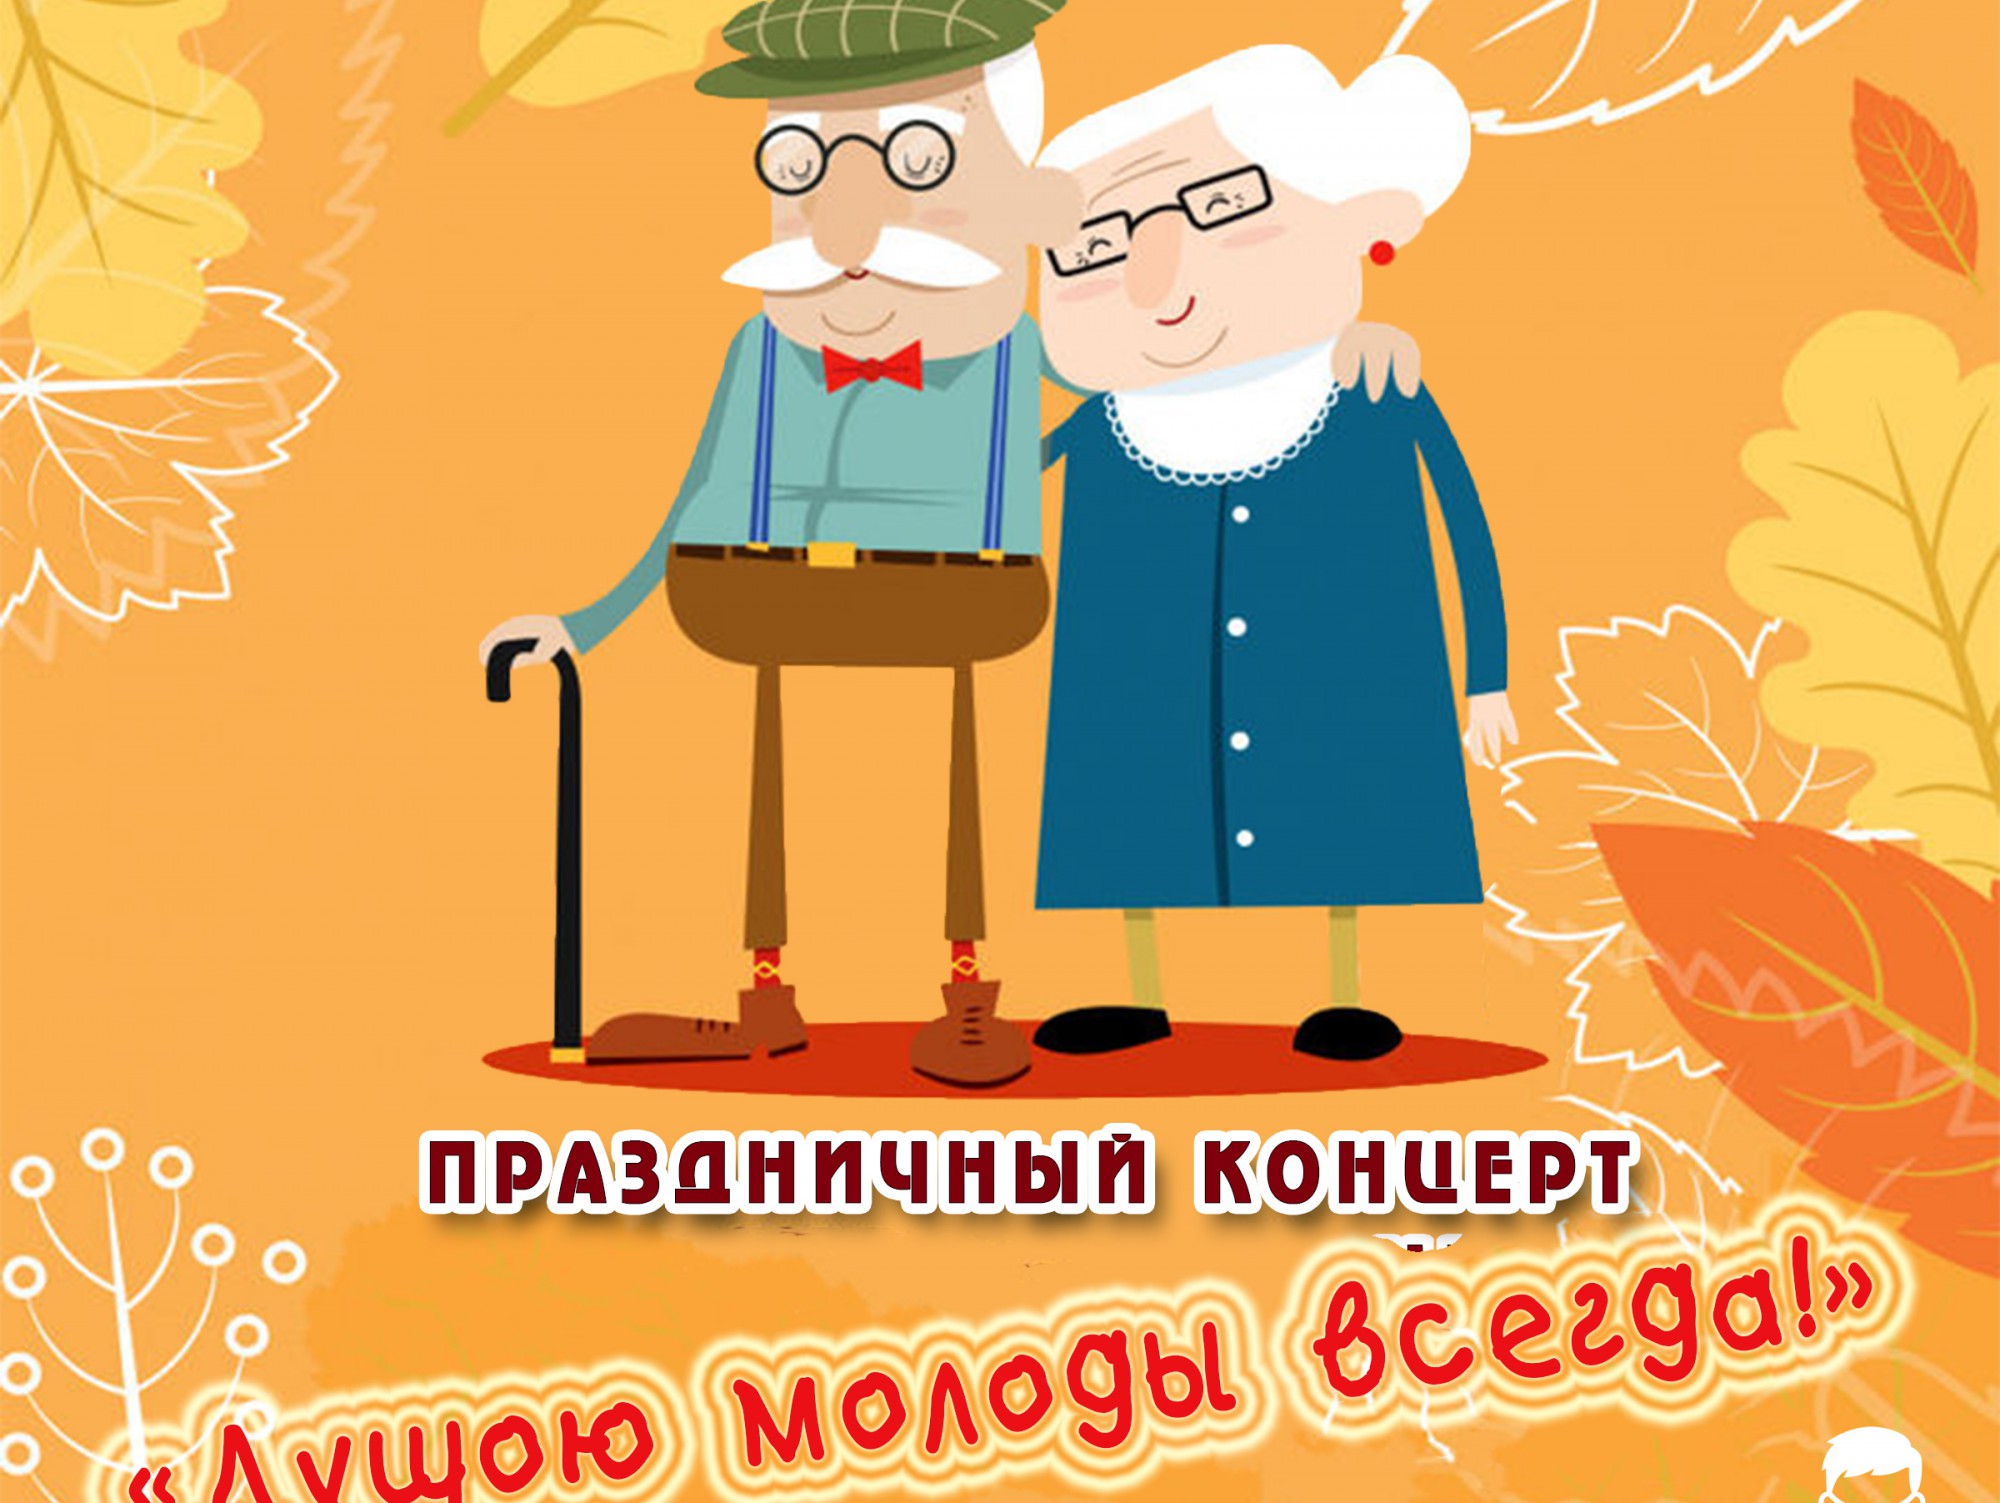 Праздник день пожилых людей. 1 Октября день пожилого человека. Открытка ко Дню пожилого человека. С днем пожилого человека картинки. С праздником пожилого человека.